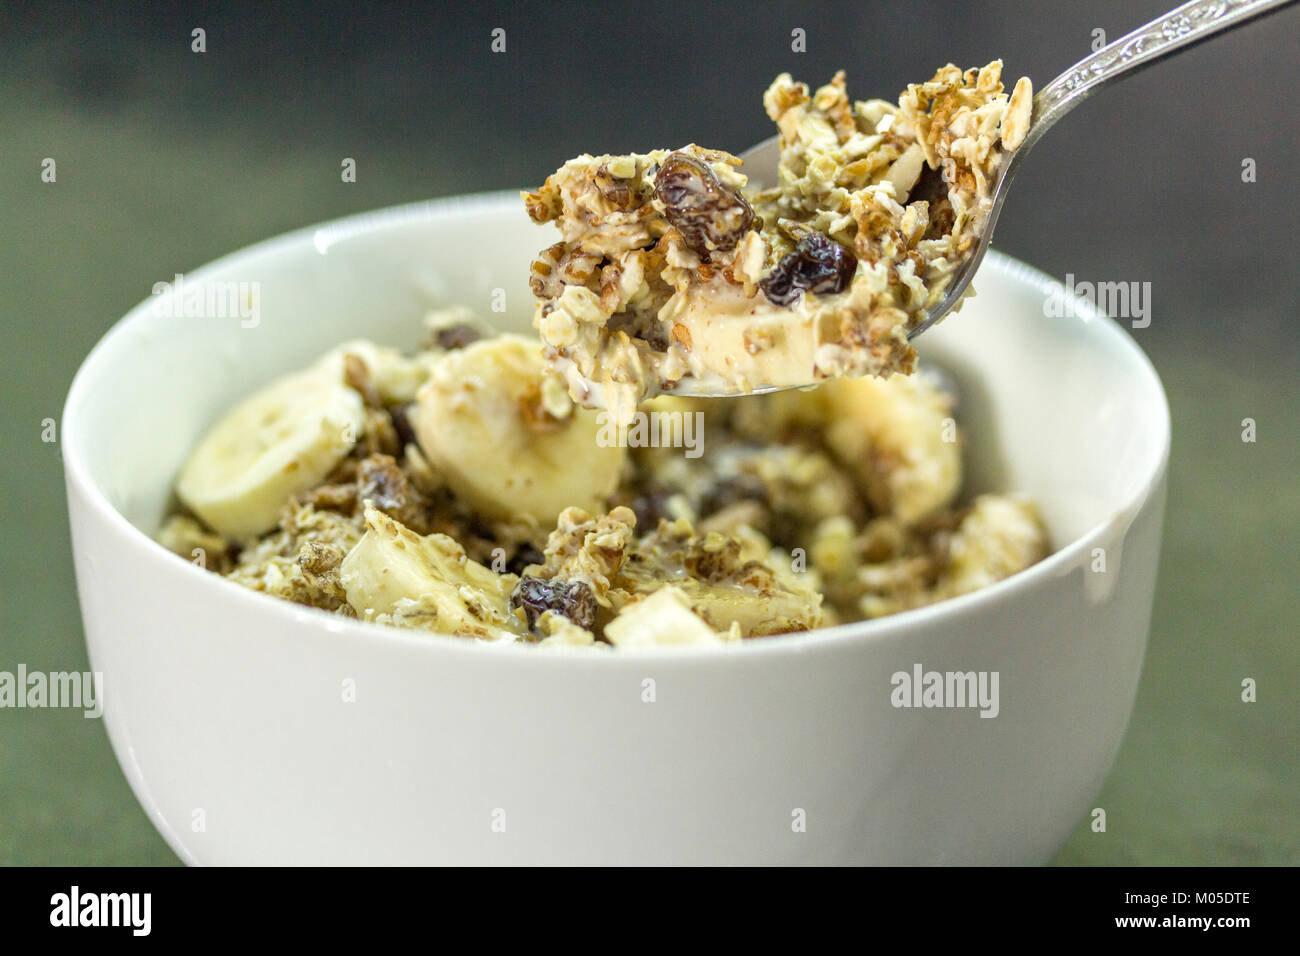 Frühstück Idee Schüssel Müsli Müsli mit in Scheiben geschnittenen Banane und Milch eine Ihrer fünf am Tag Früchte und Kohlenhydrate für slow release Energie und es ist schön Stockfoto